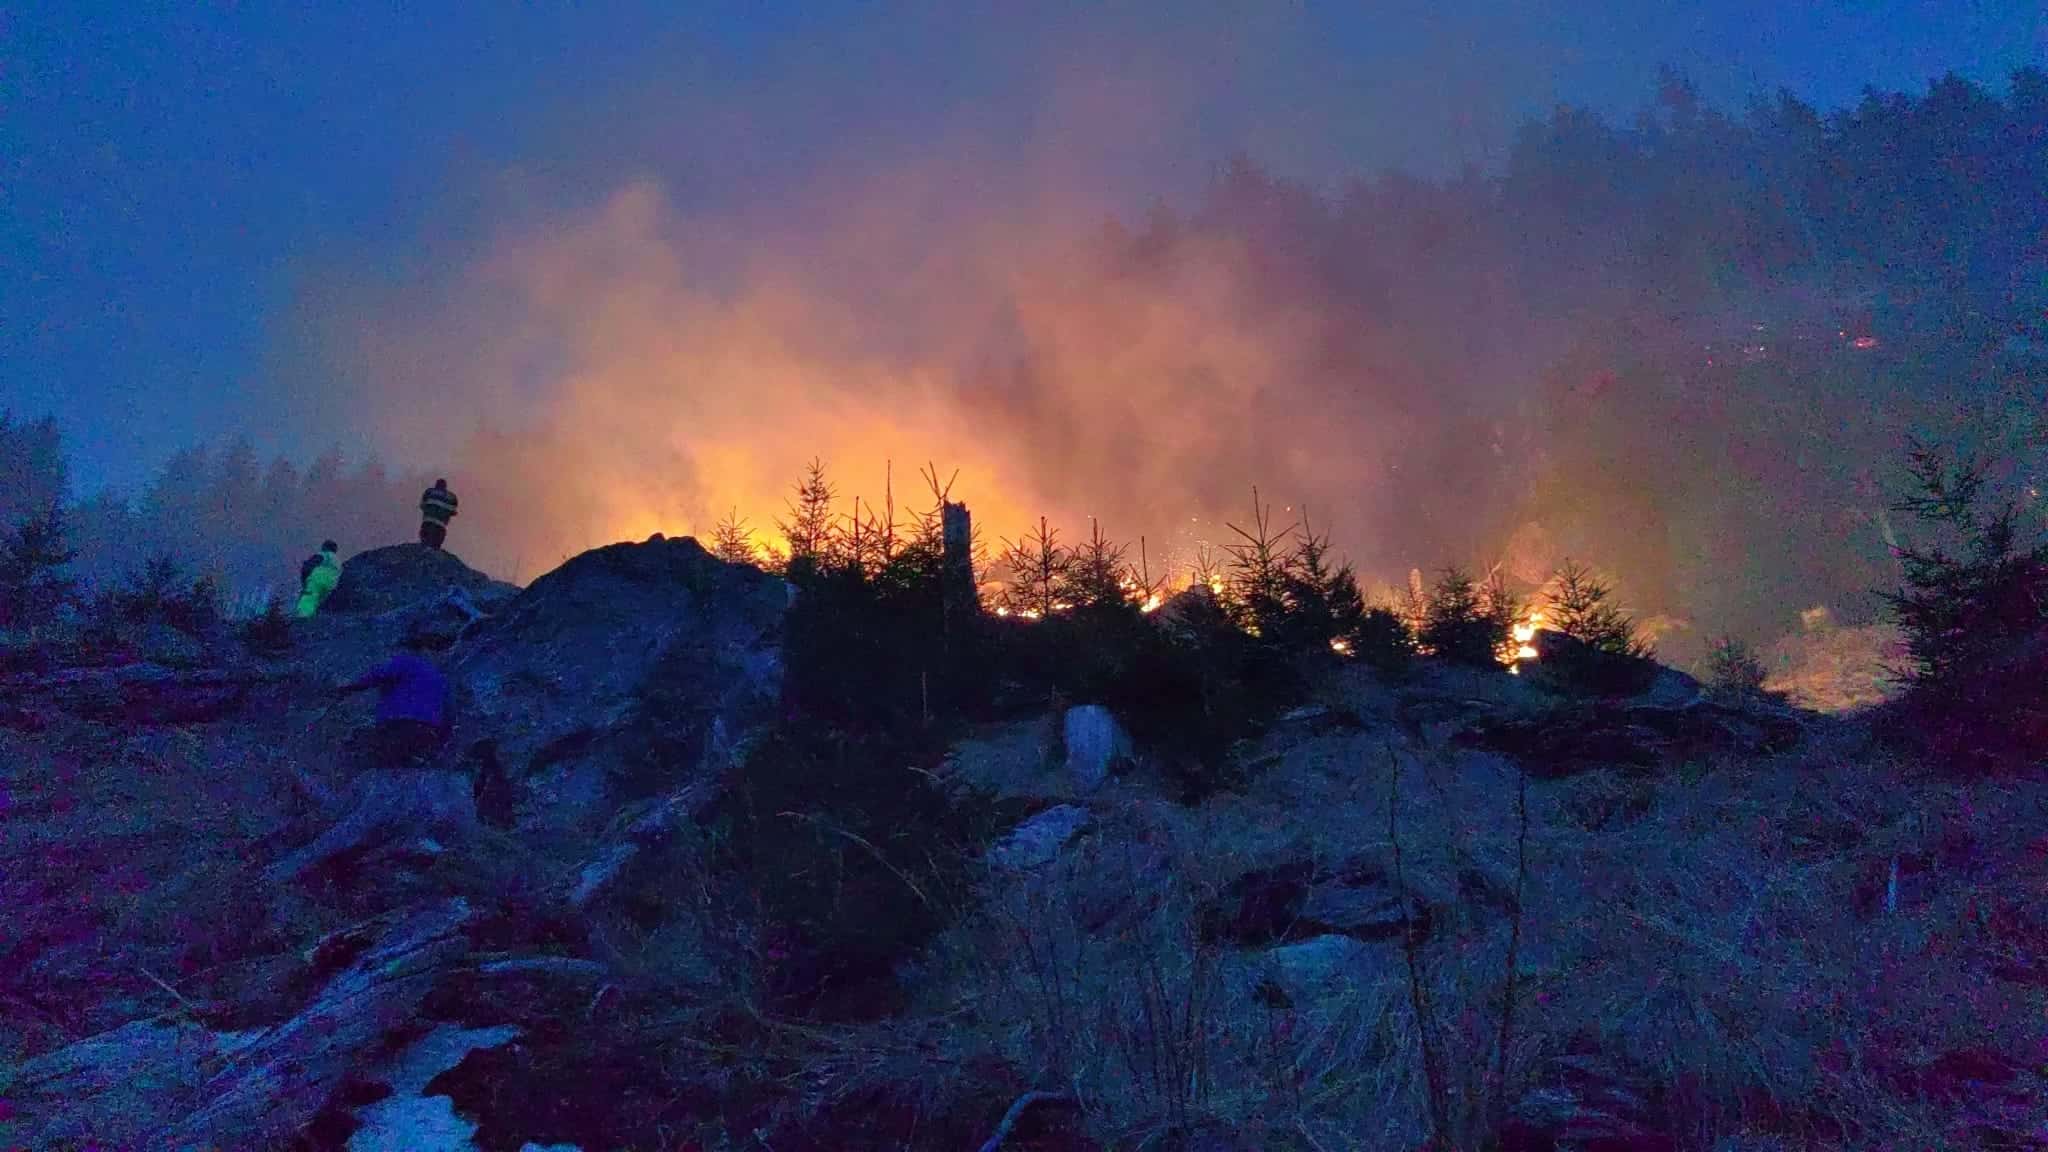 arde pădurea în munții făgăraș. misiune aproape imposibilă pentru pompieri (video)